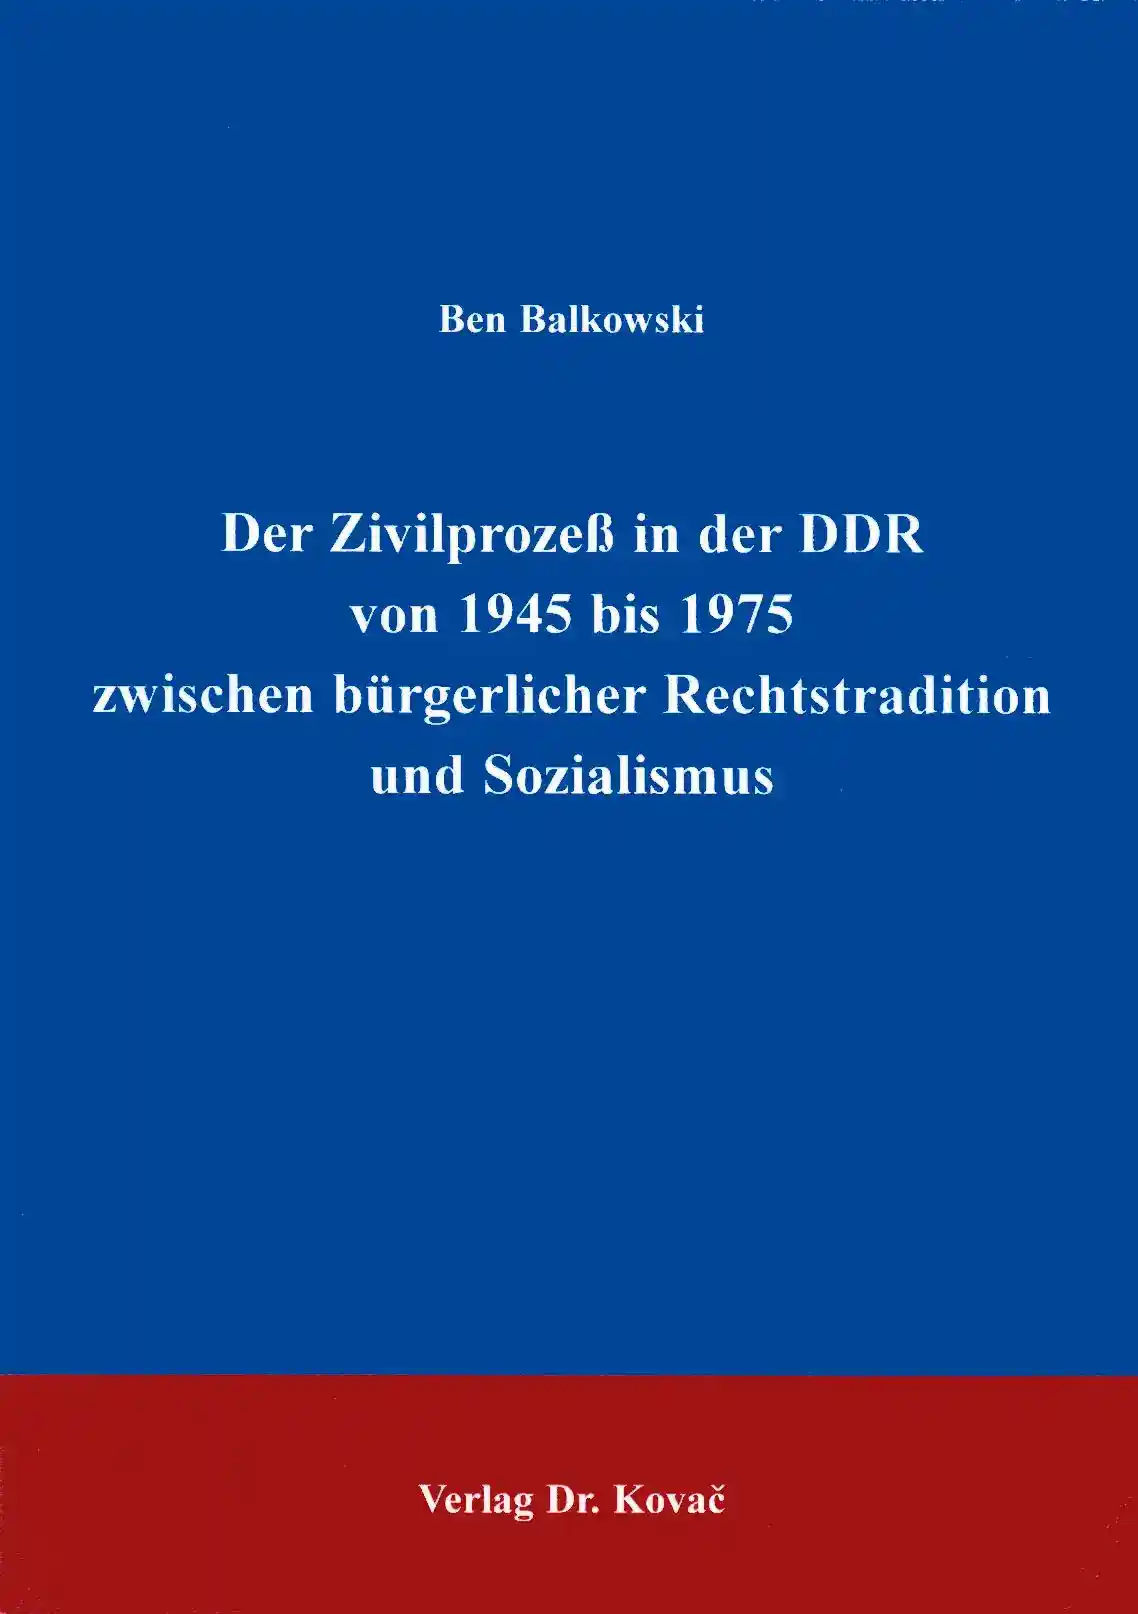 Dissertation: Der Zivilprozeß in der DDR von 1945 bis 1975 zwischen bürgerlicher Rechtstradition und Sozialismus